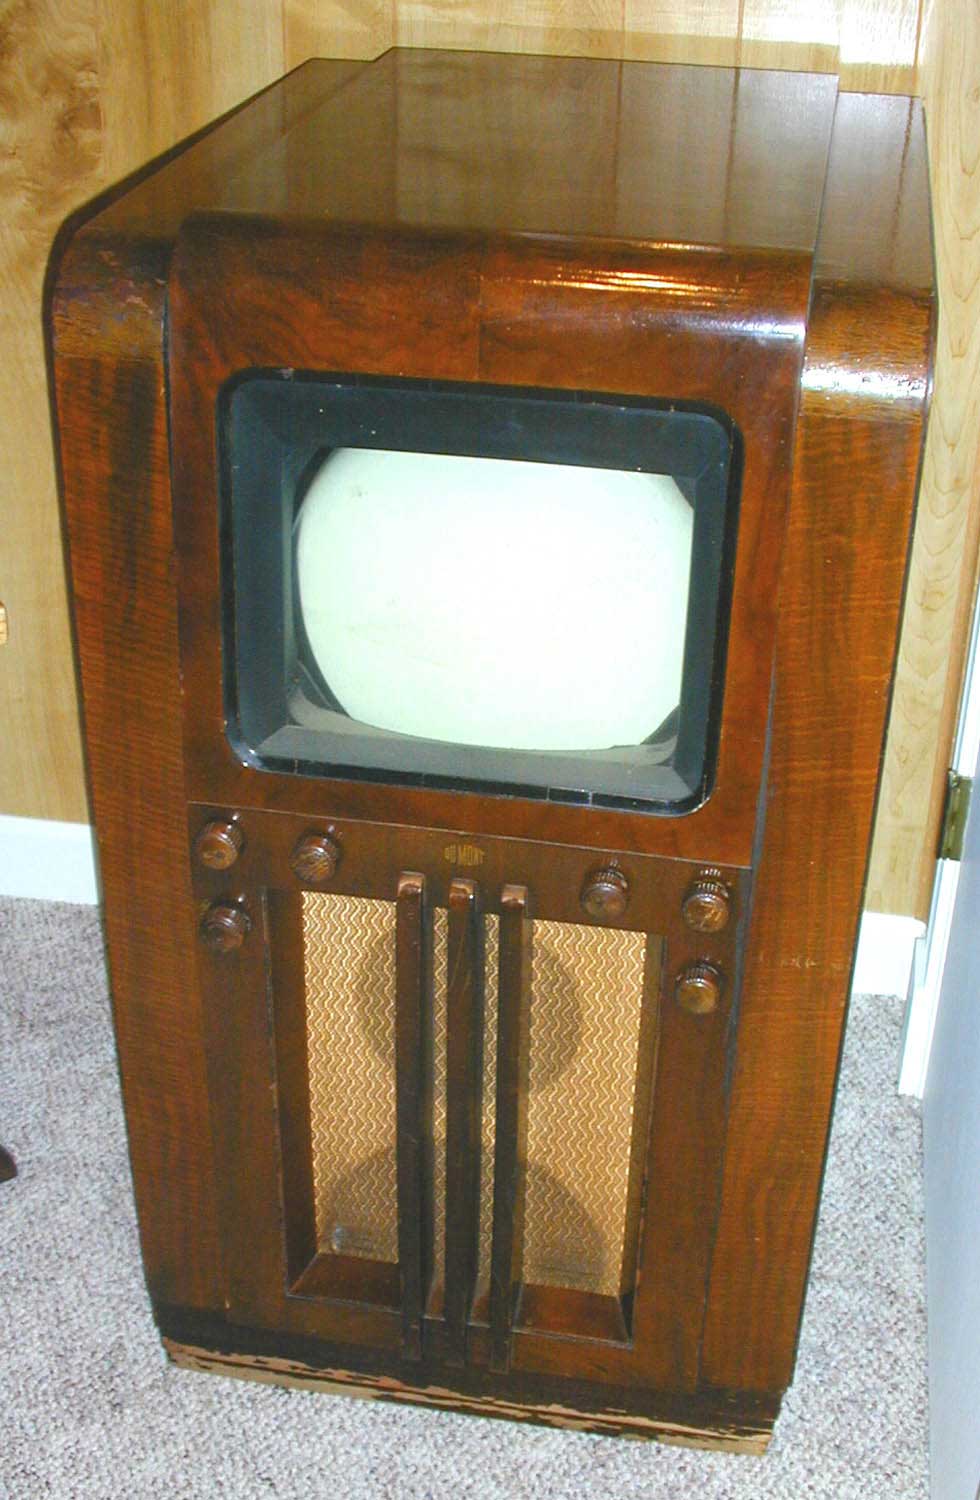 Телевизор 30 годов. Телевизор Dumont 183x. RCS TT-5 первый телевизор. Телевизоры 30-х годов. Самый первый телевизор.